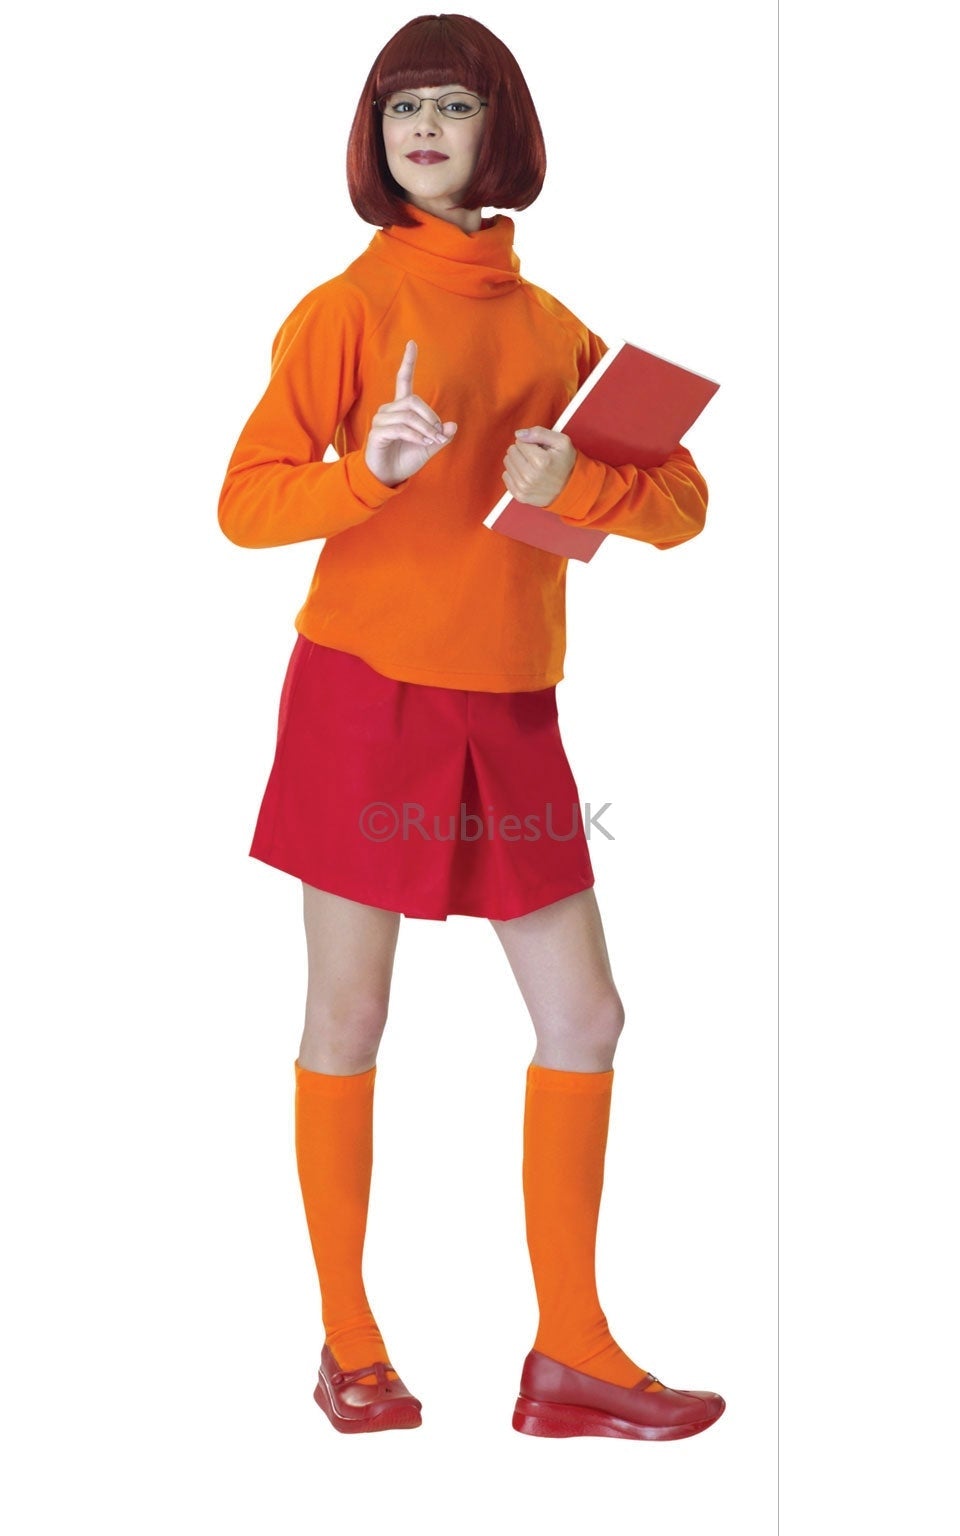 Velma Scooby Doo Costume Adult_1